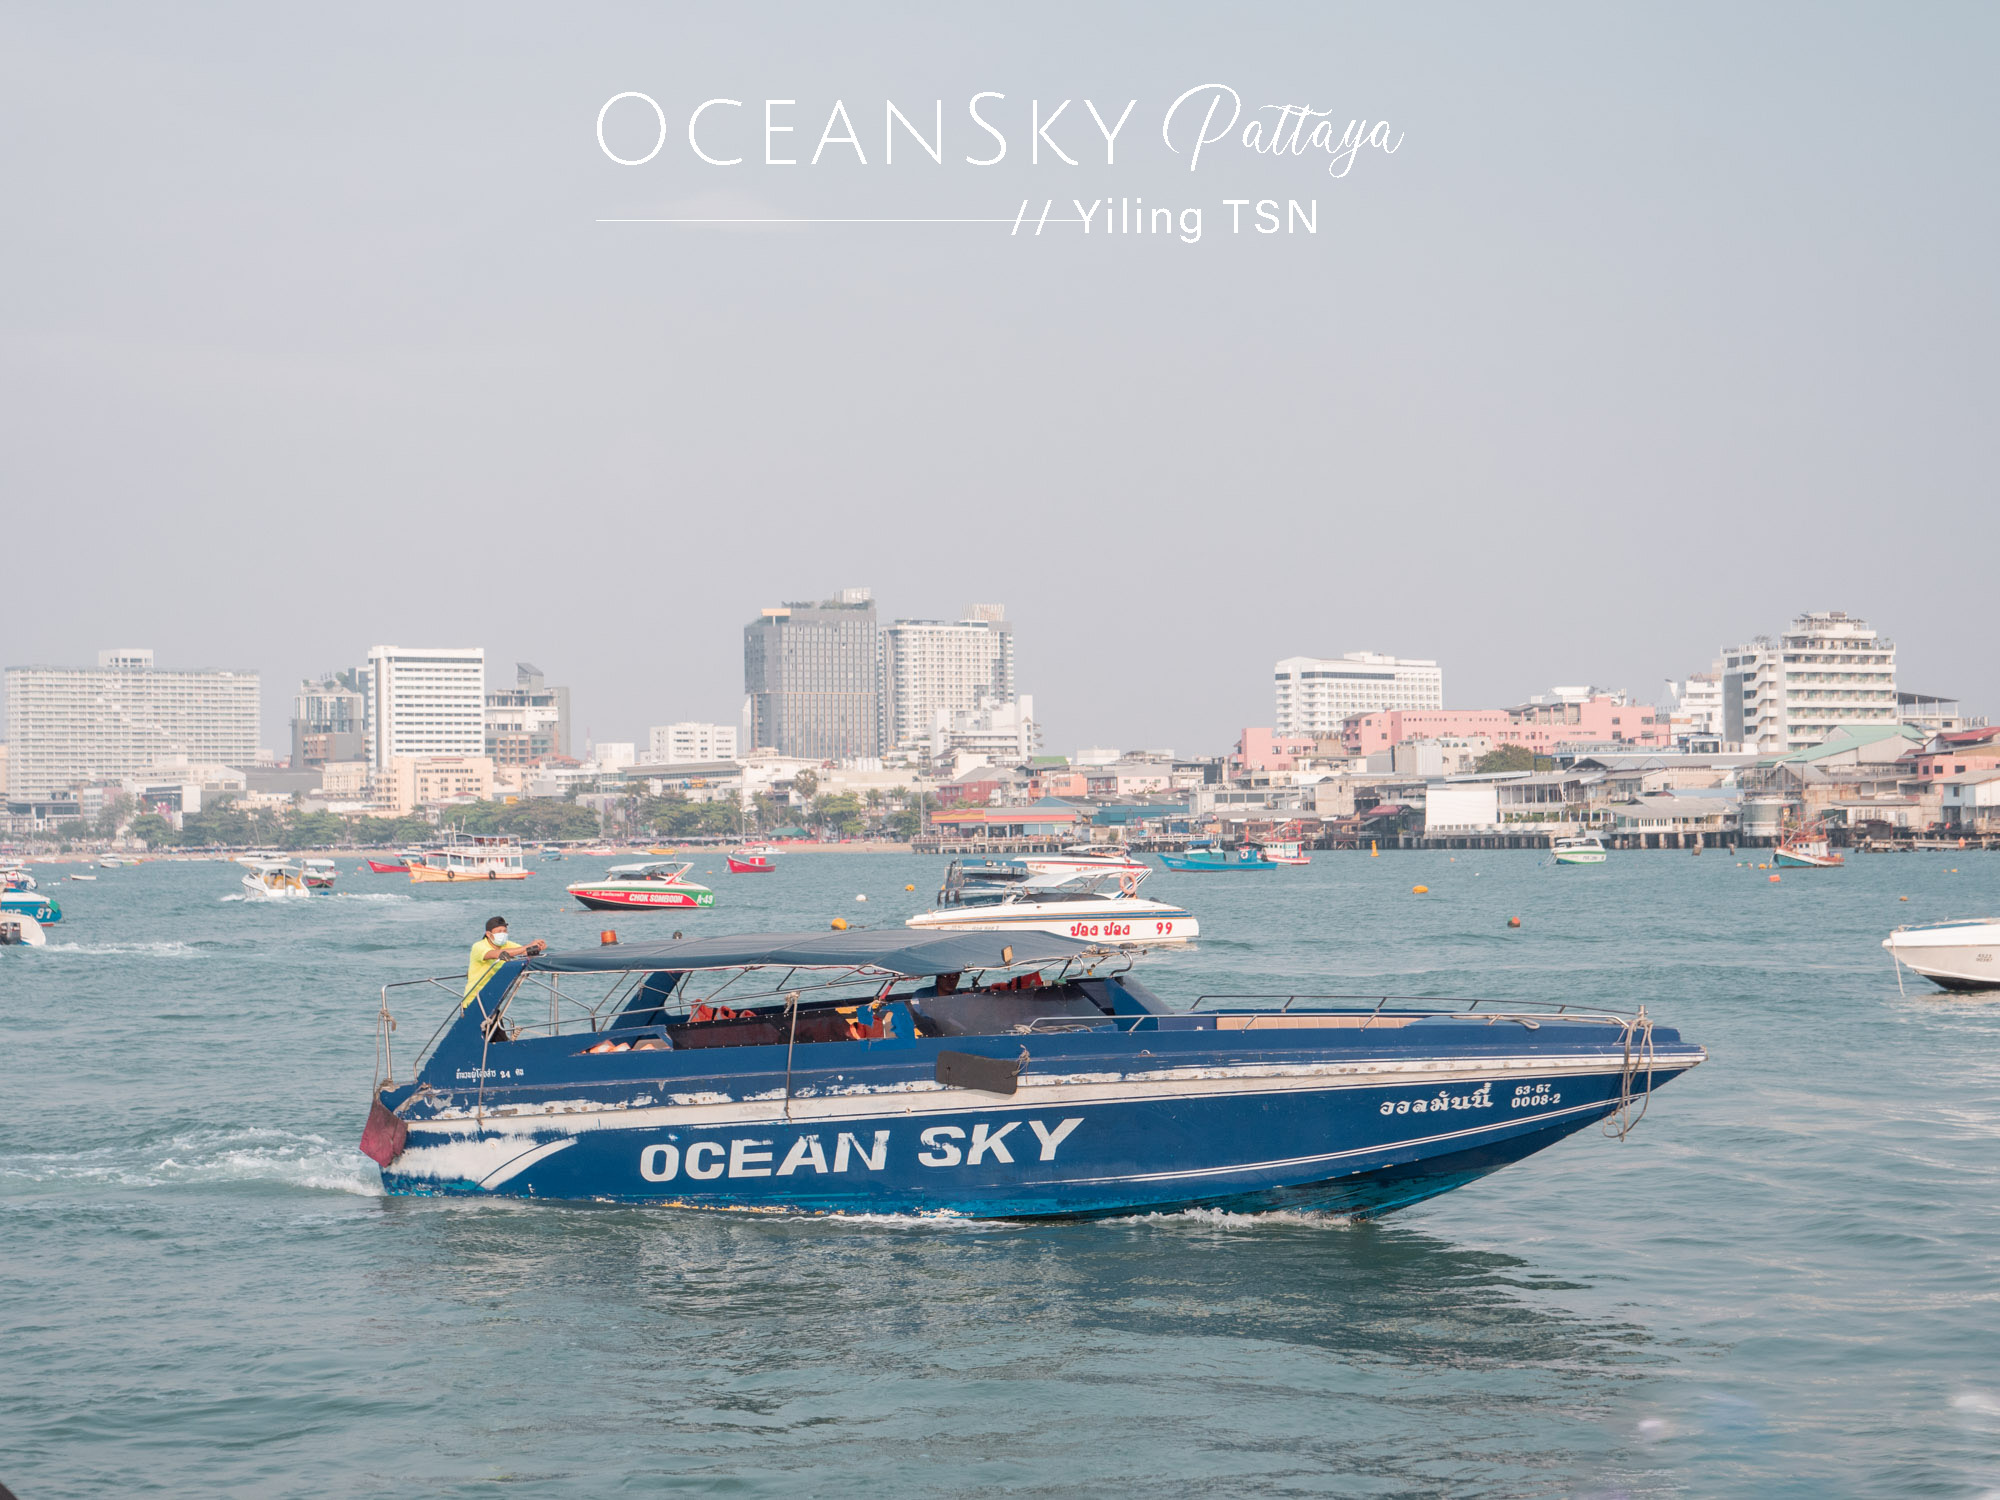 Ocean Sky Pattaya 芭達雅海洋天空郵輪晚宴：澎湃自助餐、優質人妖表演、芭達雅唯一帥氣猛男秀